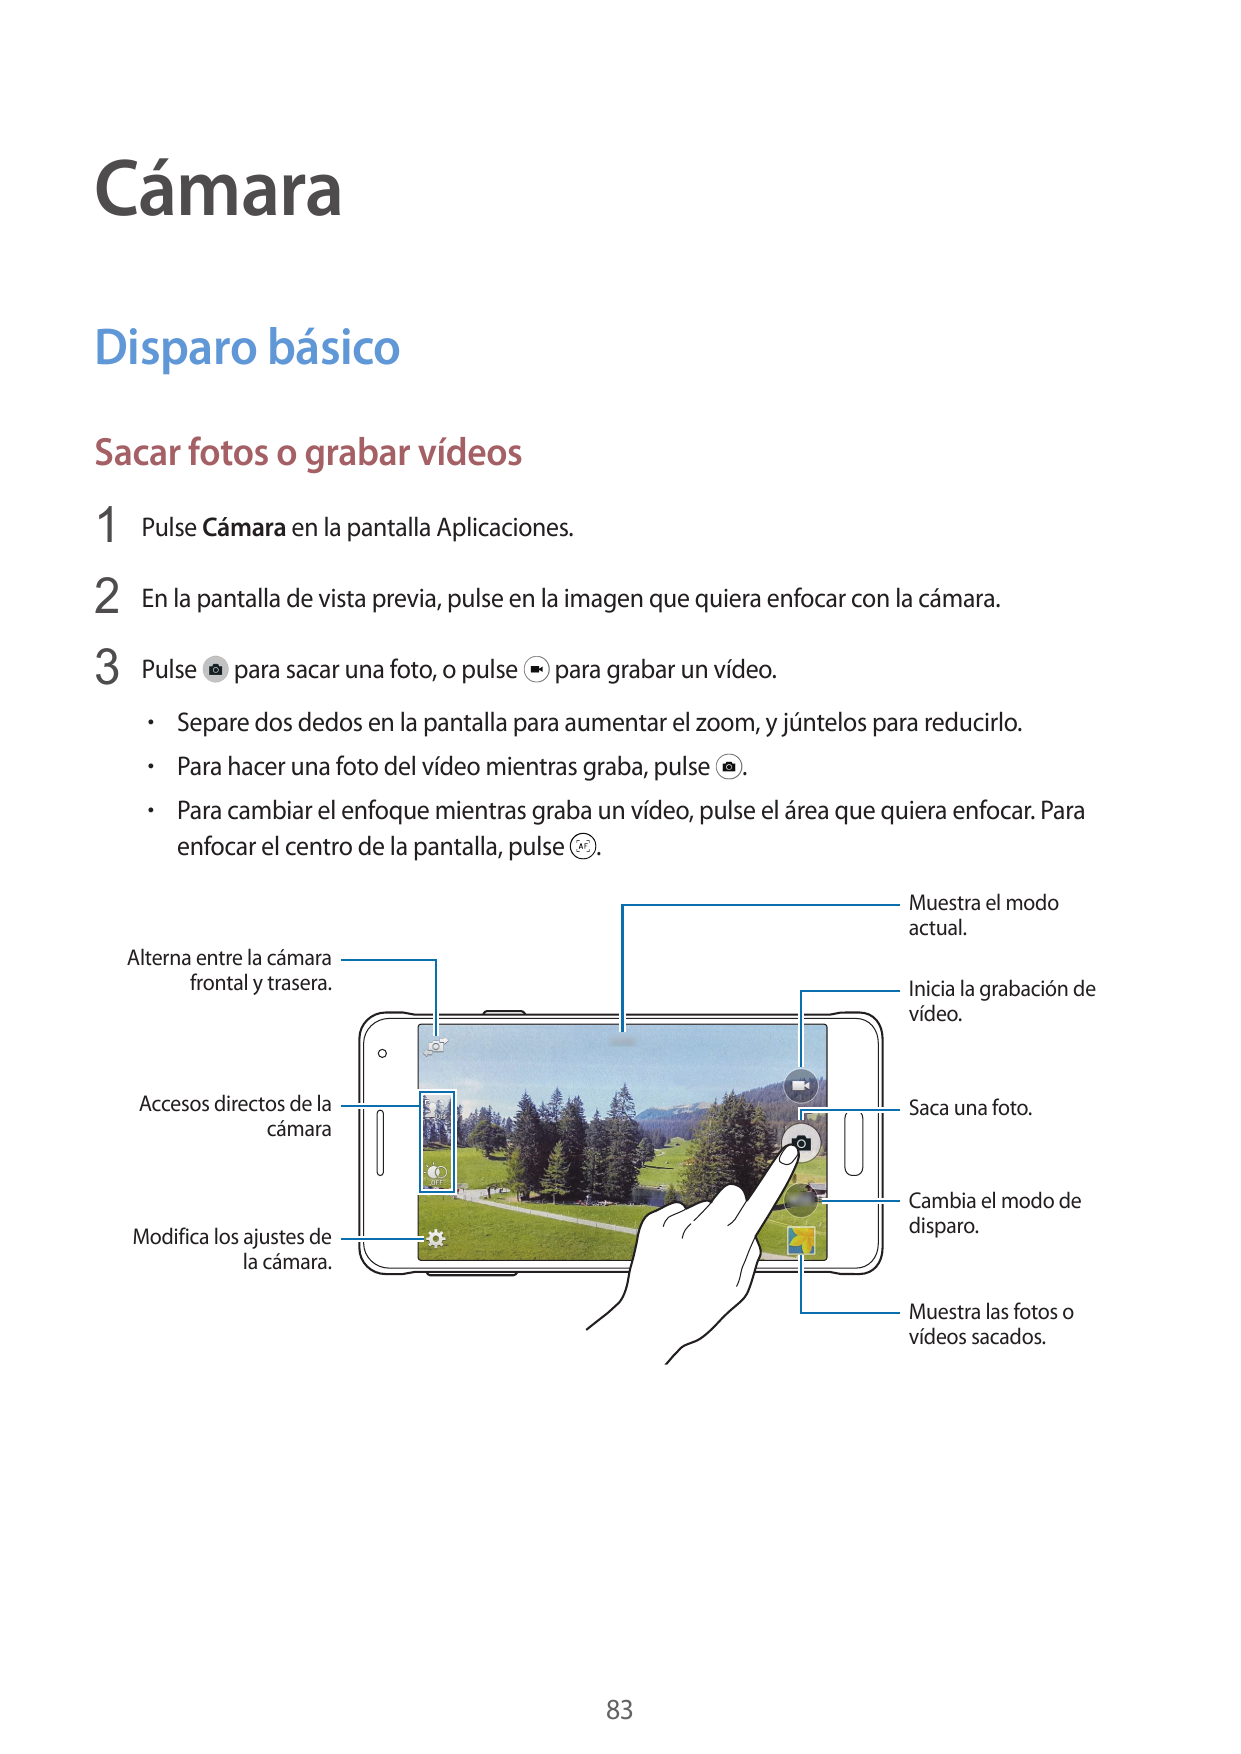 CámaraDisparo básicoSacar fotos o grabar vídeos1 Pulse Cámara en la pantalla Aplicaciones.2 En la pantalla de vista previa, puls